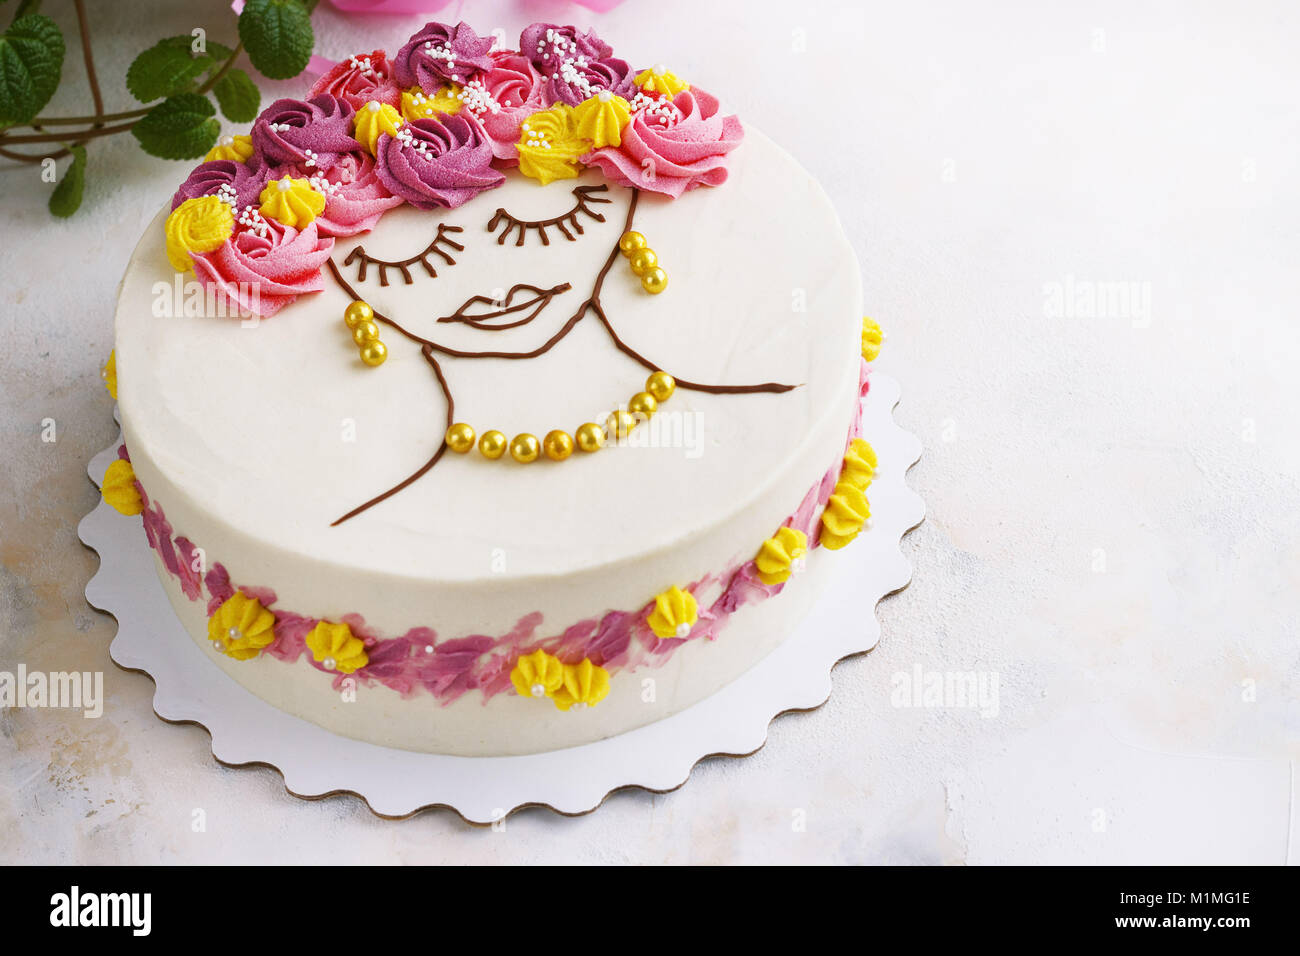 Festliche Kuchen mit Sahne Blumen und ein Mädchen Gesicht auf einen hellen Hintergrund Stockfoto